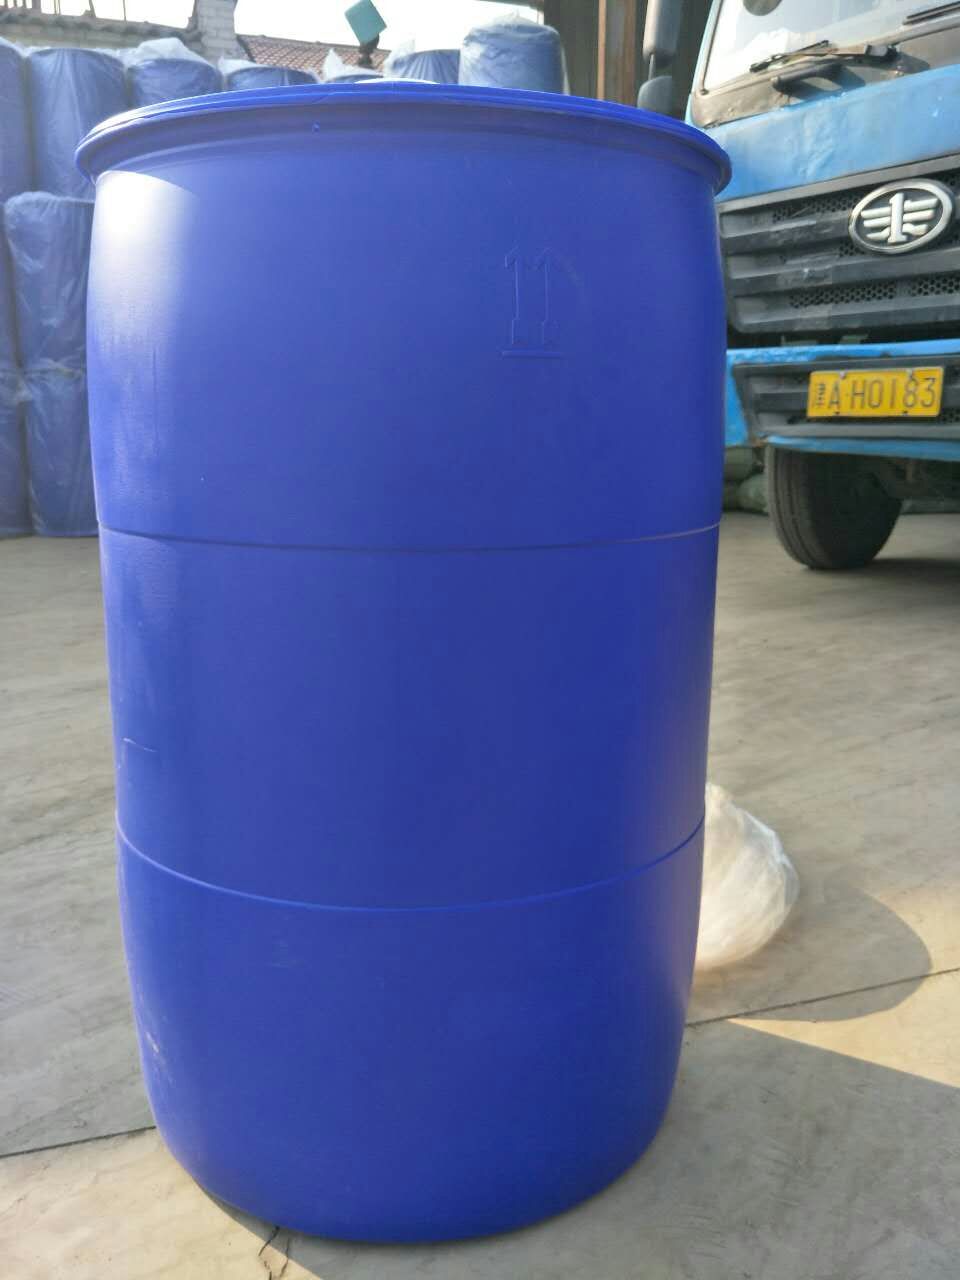 200升塑料桶 200升塑料桶生产厂家 德州塑料桶生产商